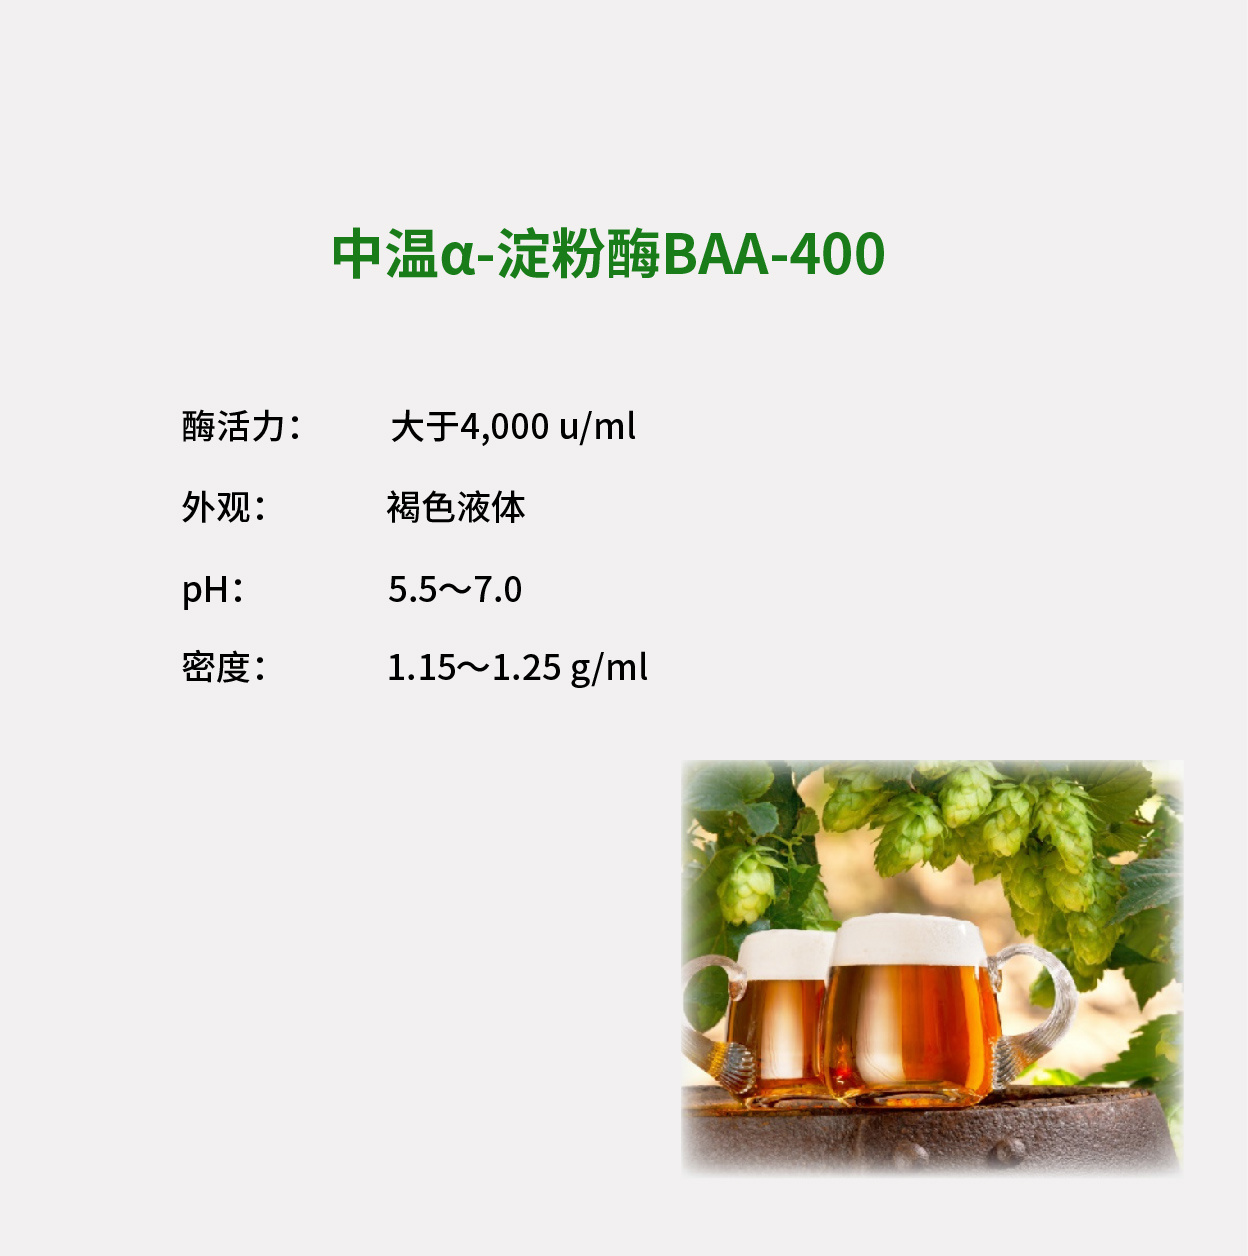 中温α-淀粉酶BAA-400